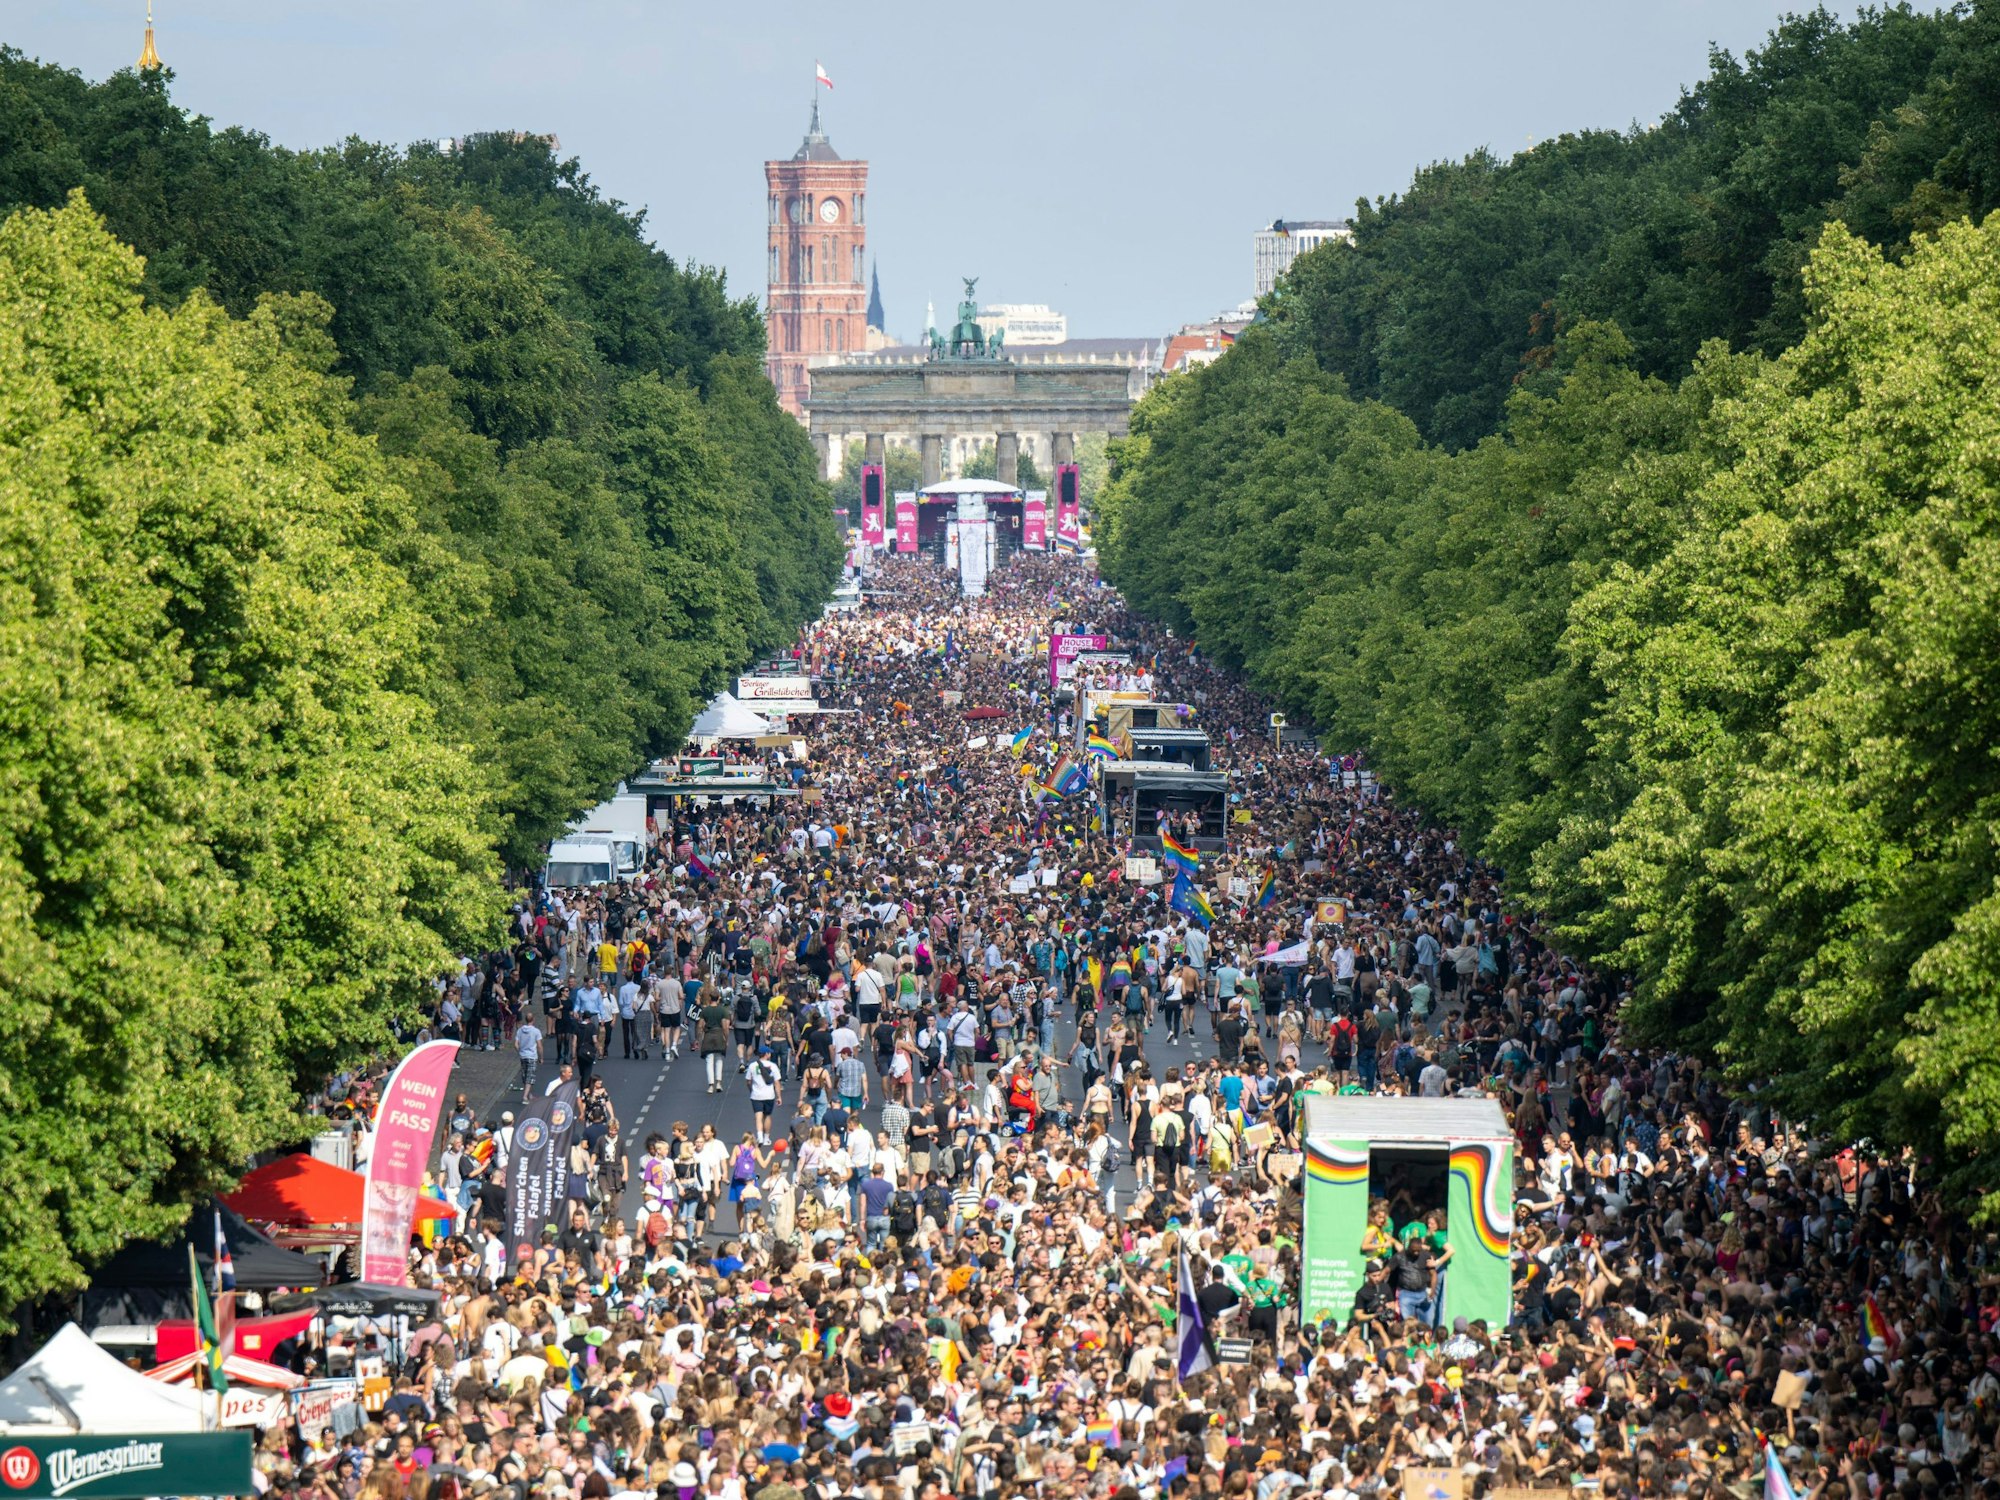 Der Zug des Berliner Christopher Street Day (CSD) zieht zum Brandenburger Tor.